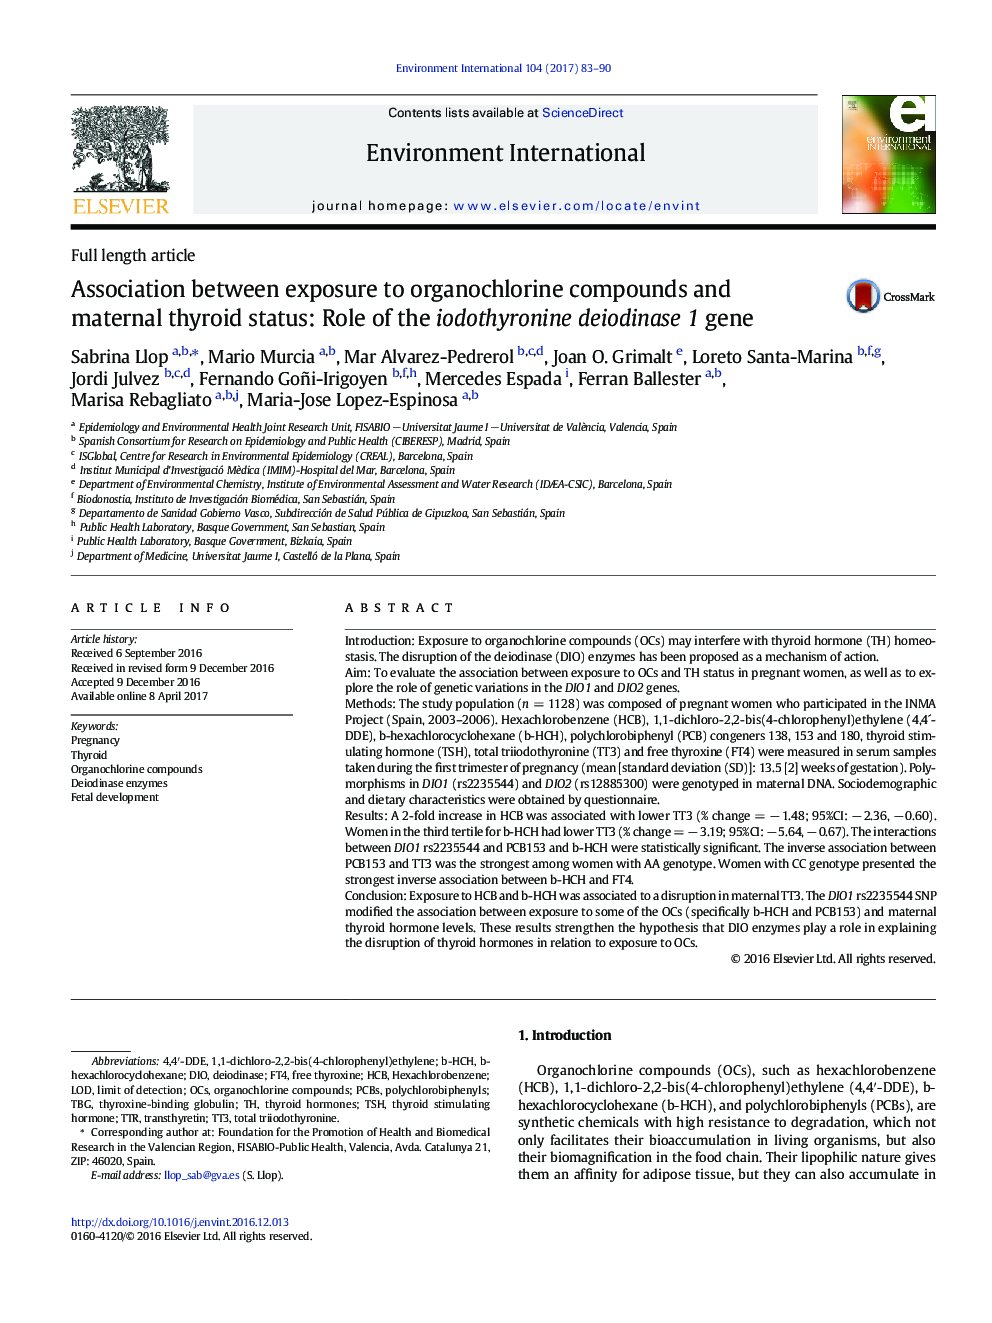 مقاله طول کامل ارتباط بین قرار گرفتن در معرض ترکیبات ارگانوکلورن و وضعیت تیروئید مادر: نقش ژن یودوتیرونین دیویدوناز 1 